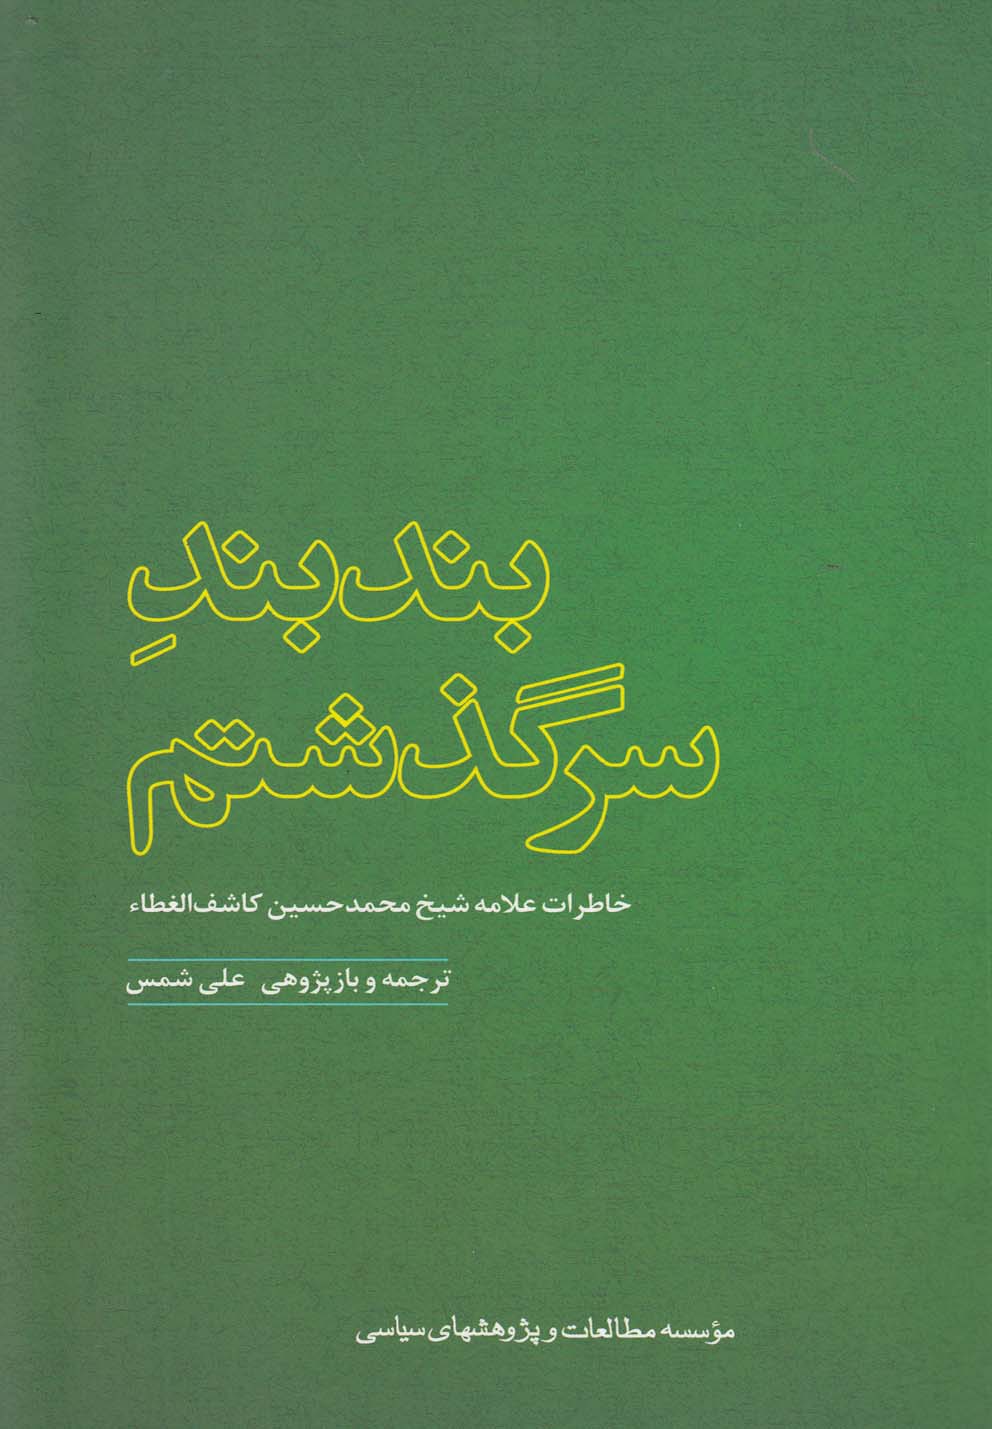  کتاب بندبند سرگذشتم: خاطرات آیه الله حاج شیخ محمدحسین کاشف الغطاء